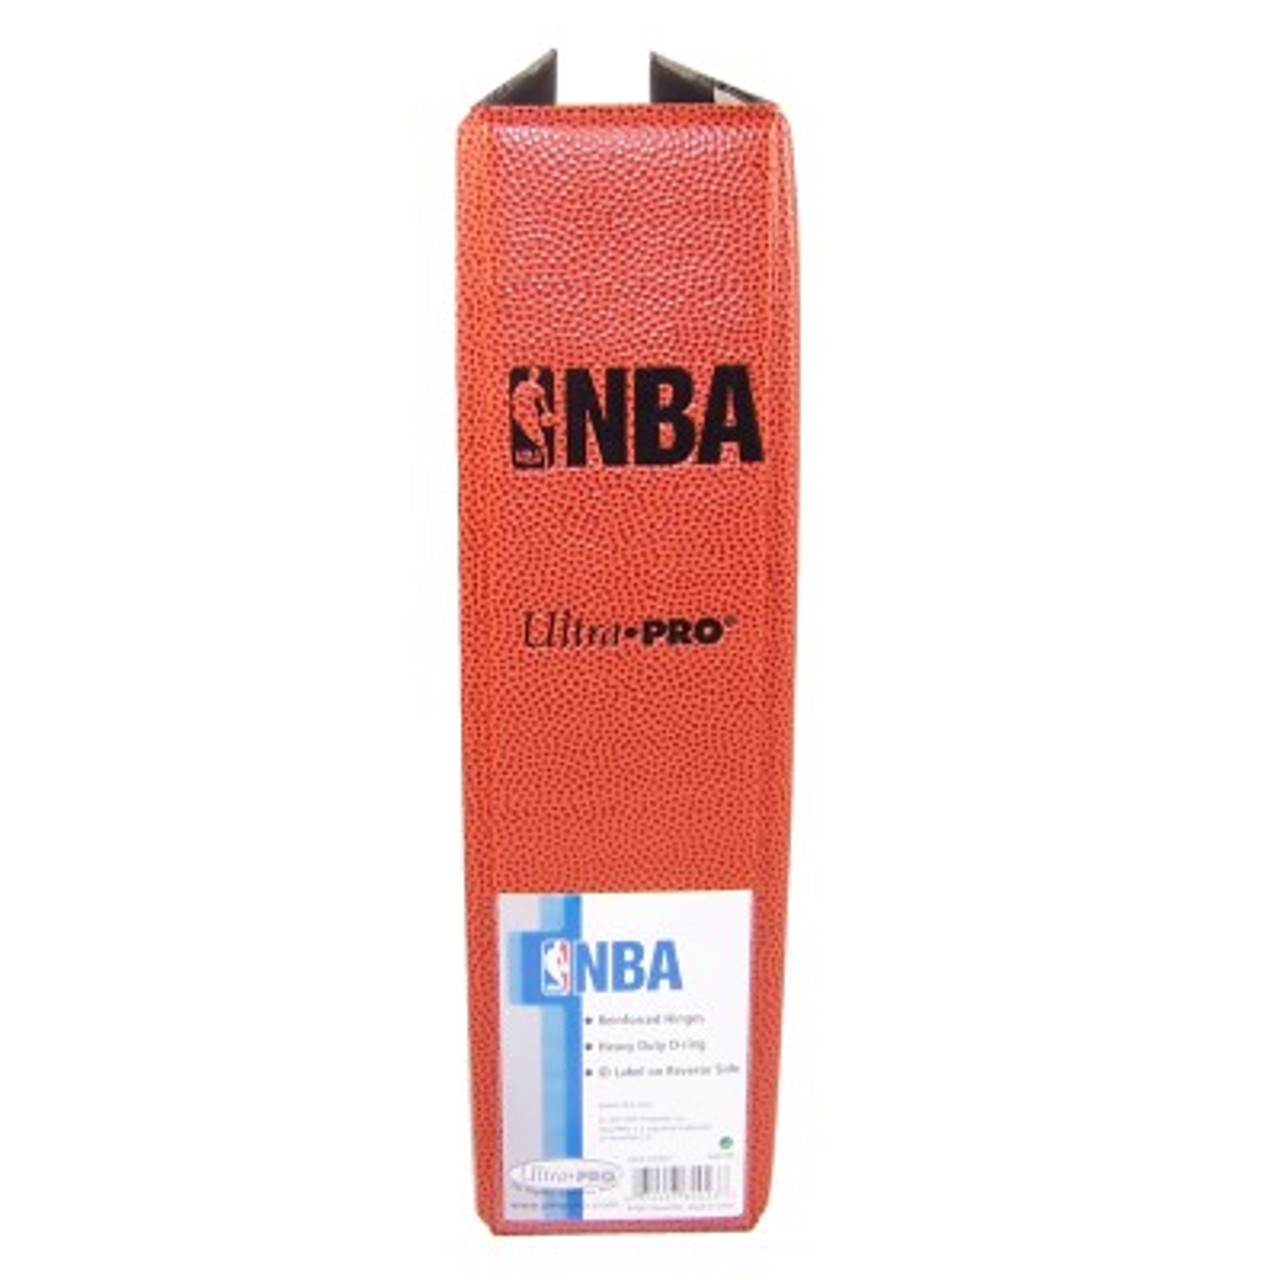 Ultra-Pro 3" Album - Pebbled NBA